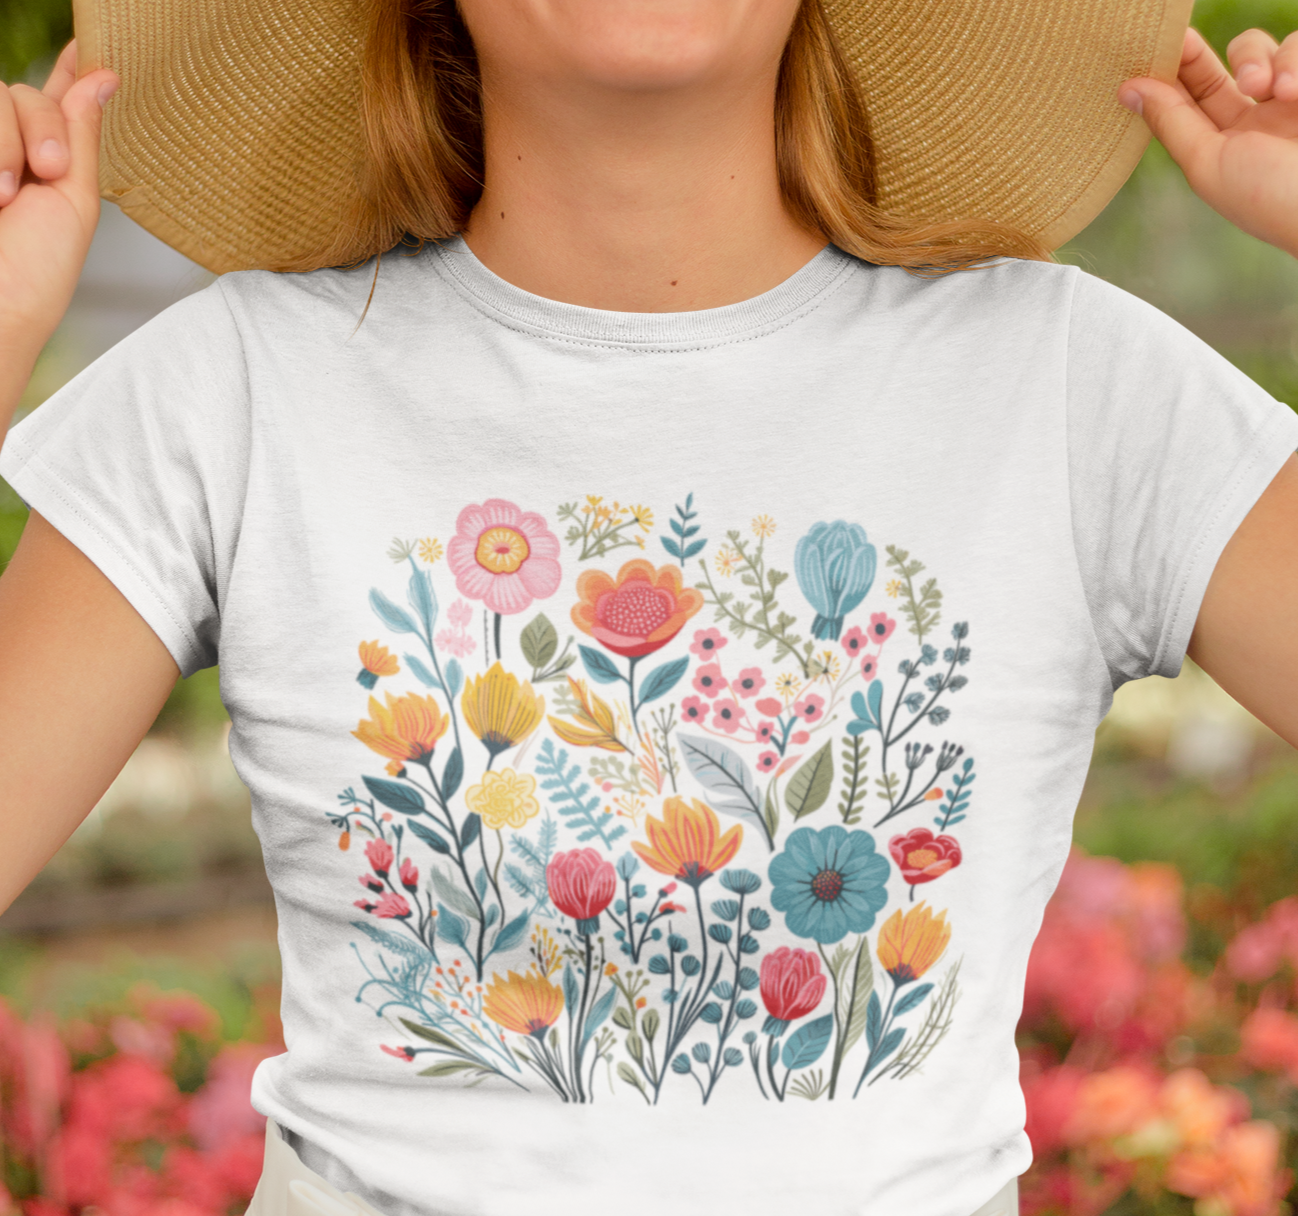 Flower Shirt, Floral Shirt, Garden Shirt, Wildflower Shirt, Botanical Shirt, Cottagecore Shirt, Aesthetic Shirt, Nature Shirt, Gift for her